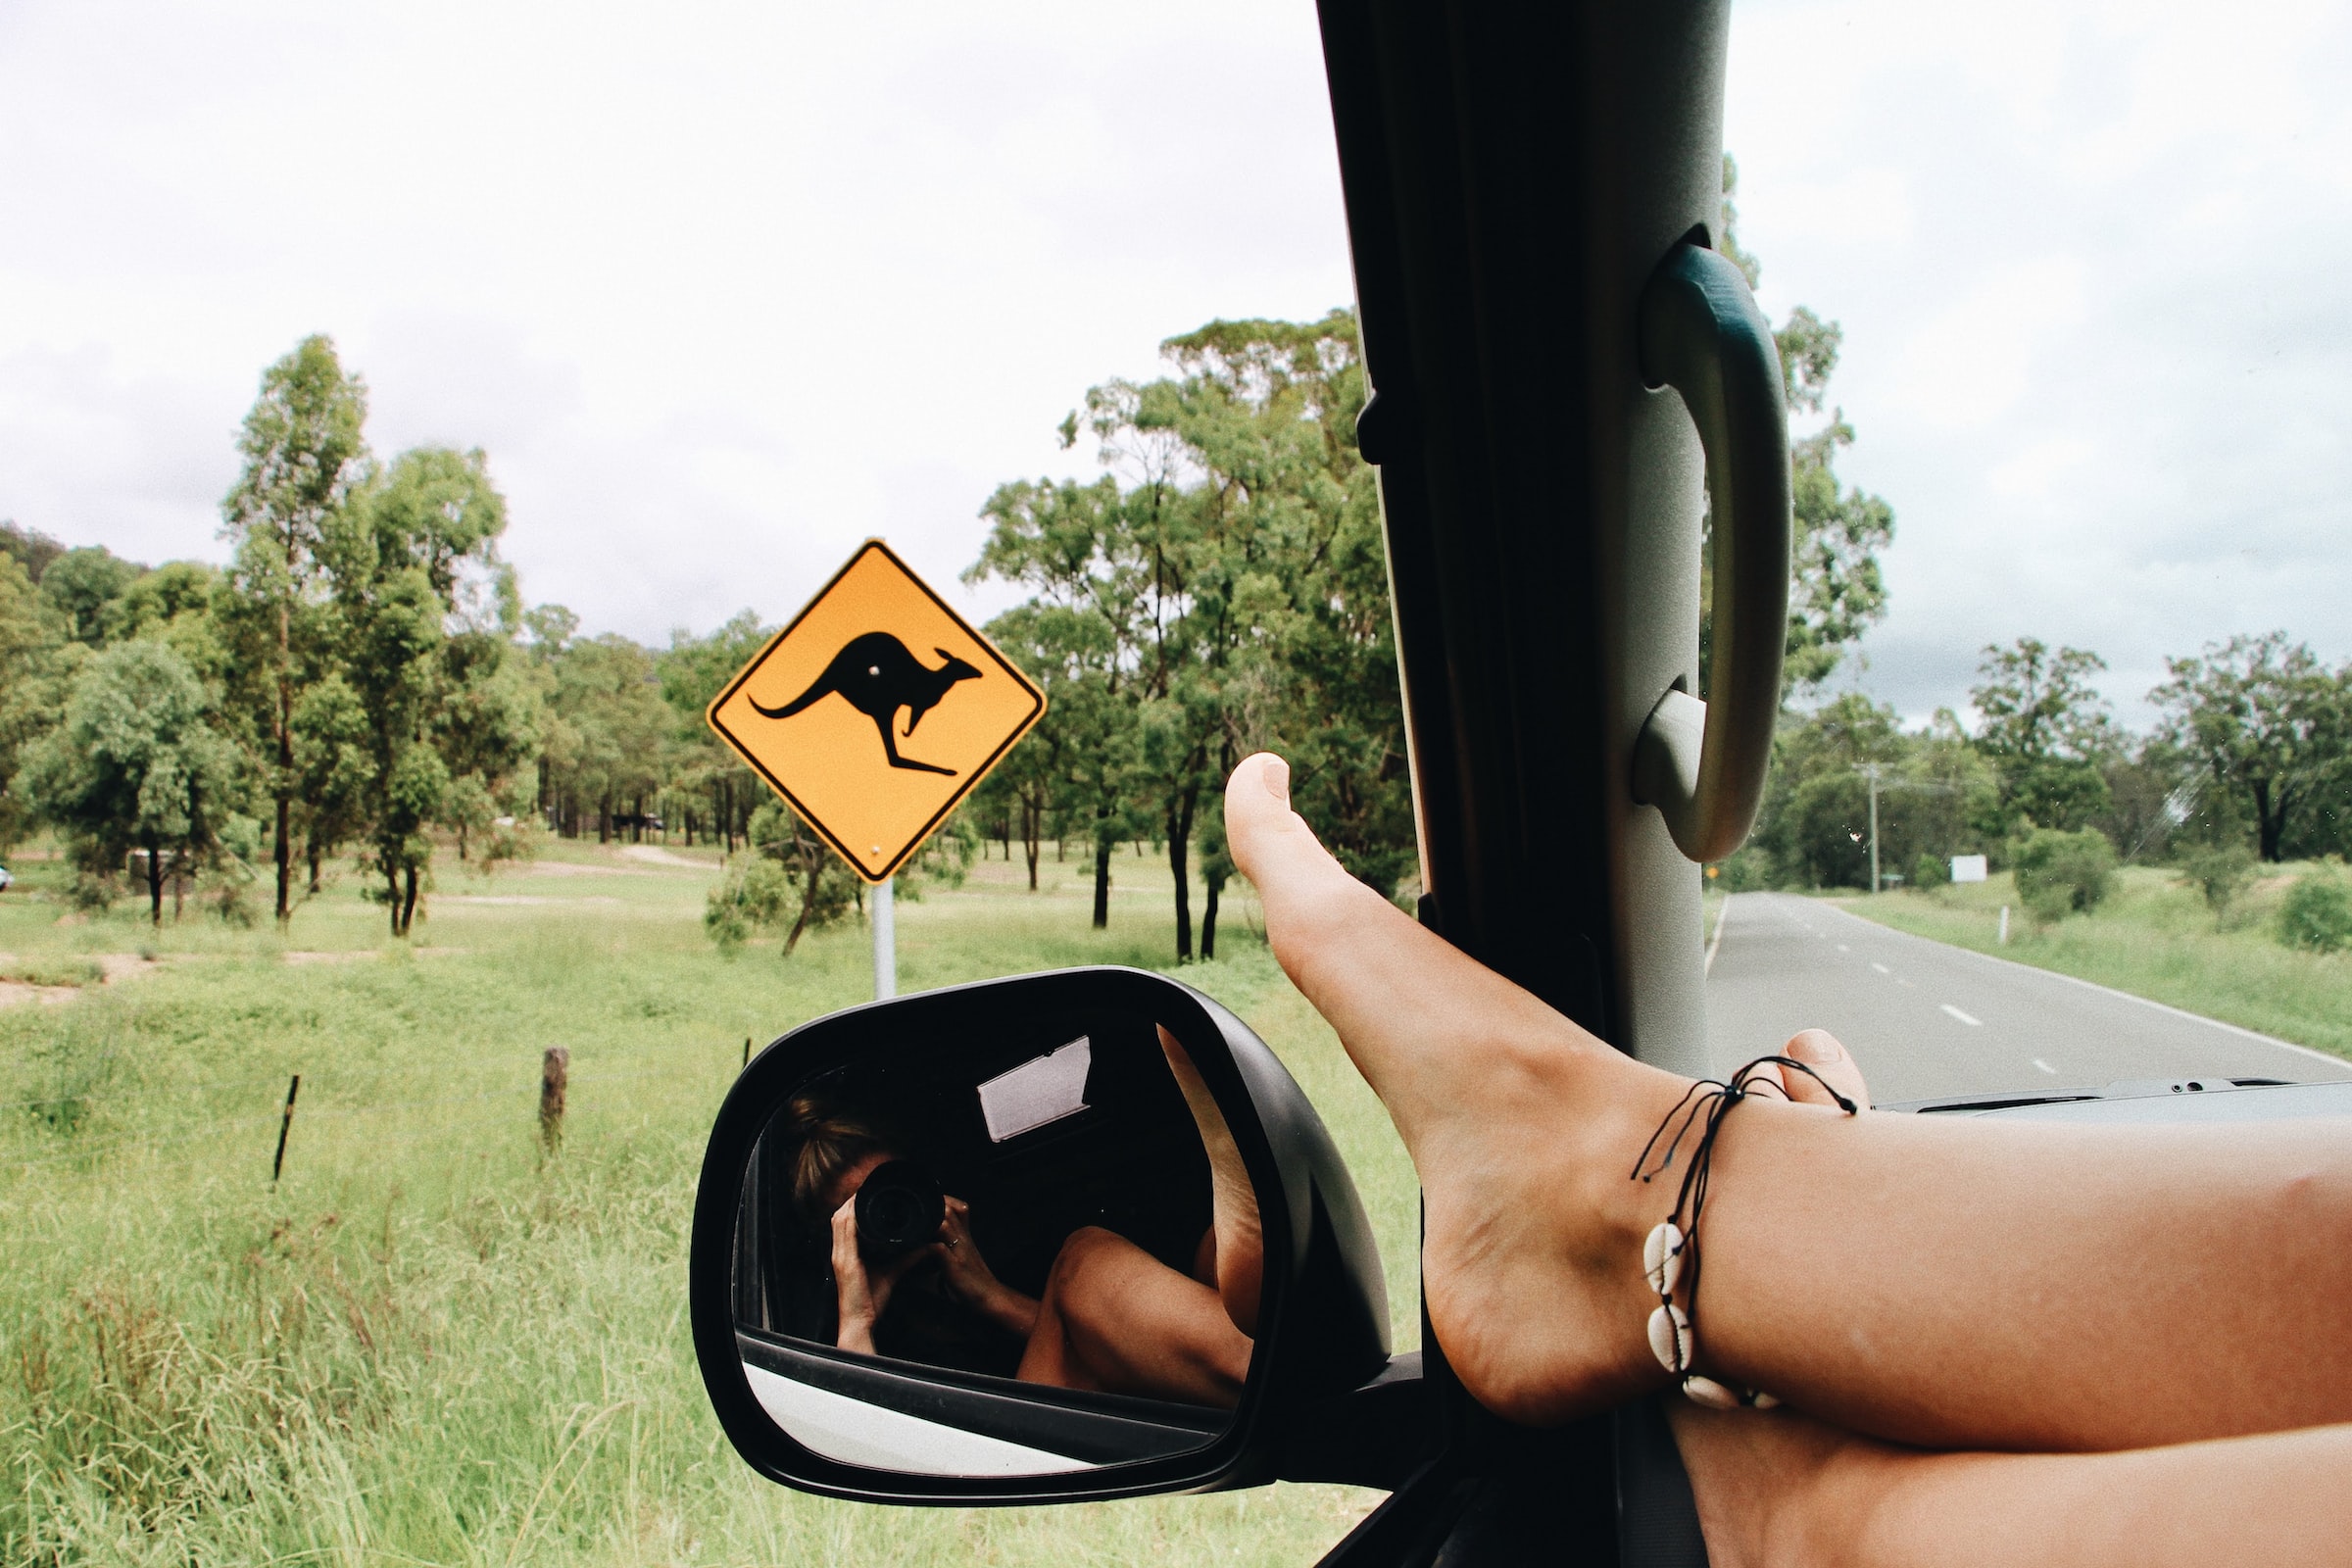 Автомобиль стоит на дороге, внутри него расслабленно сидит девушка, которая фотографирует дорожный знак с кенгуру.